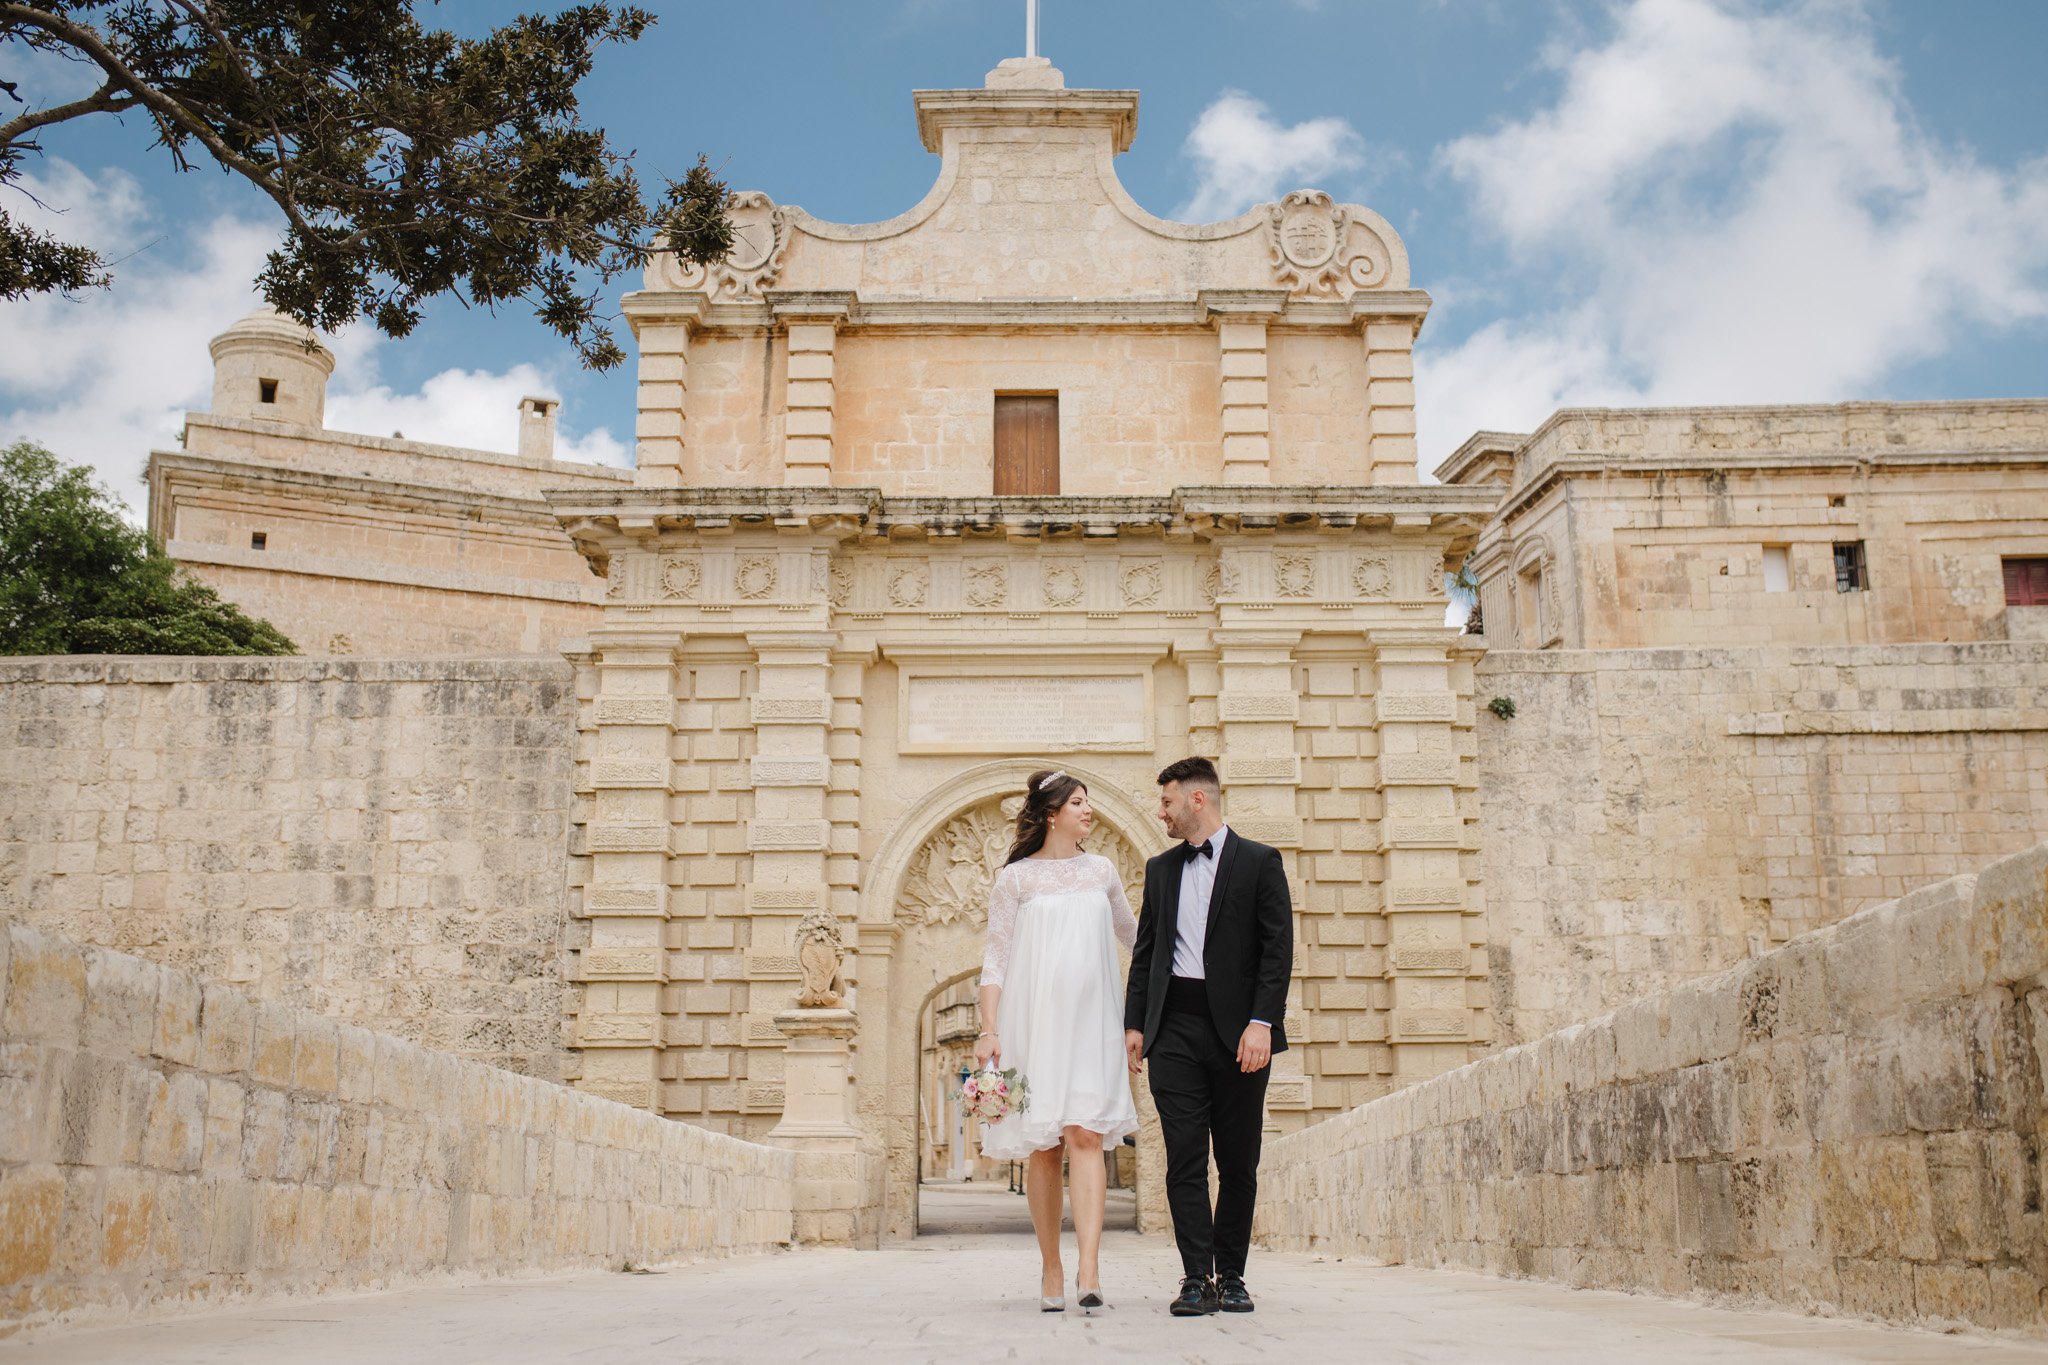 gate of Mdina in Malta